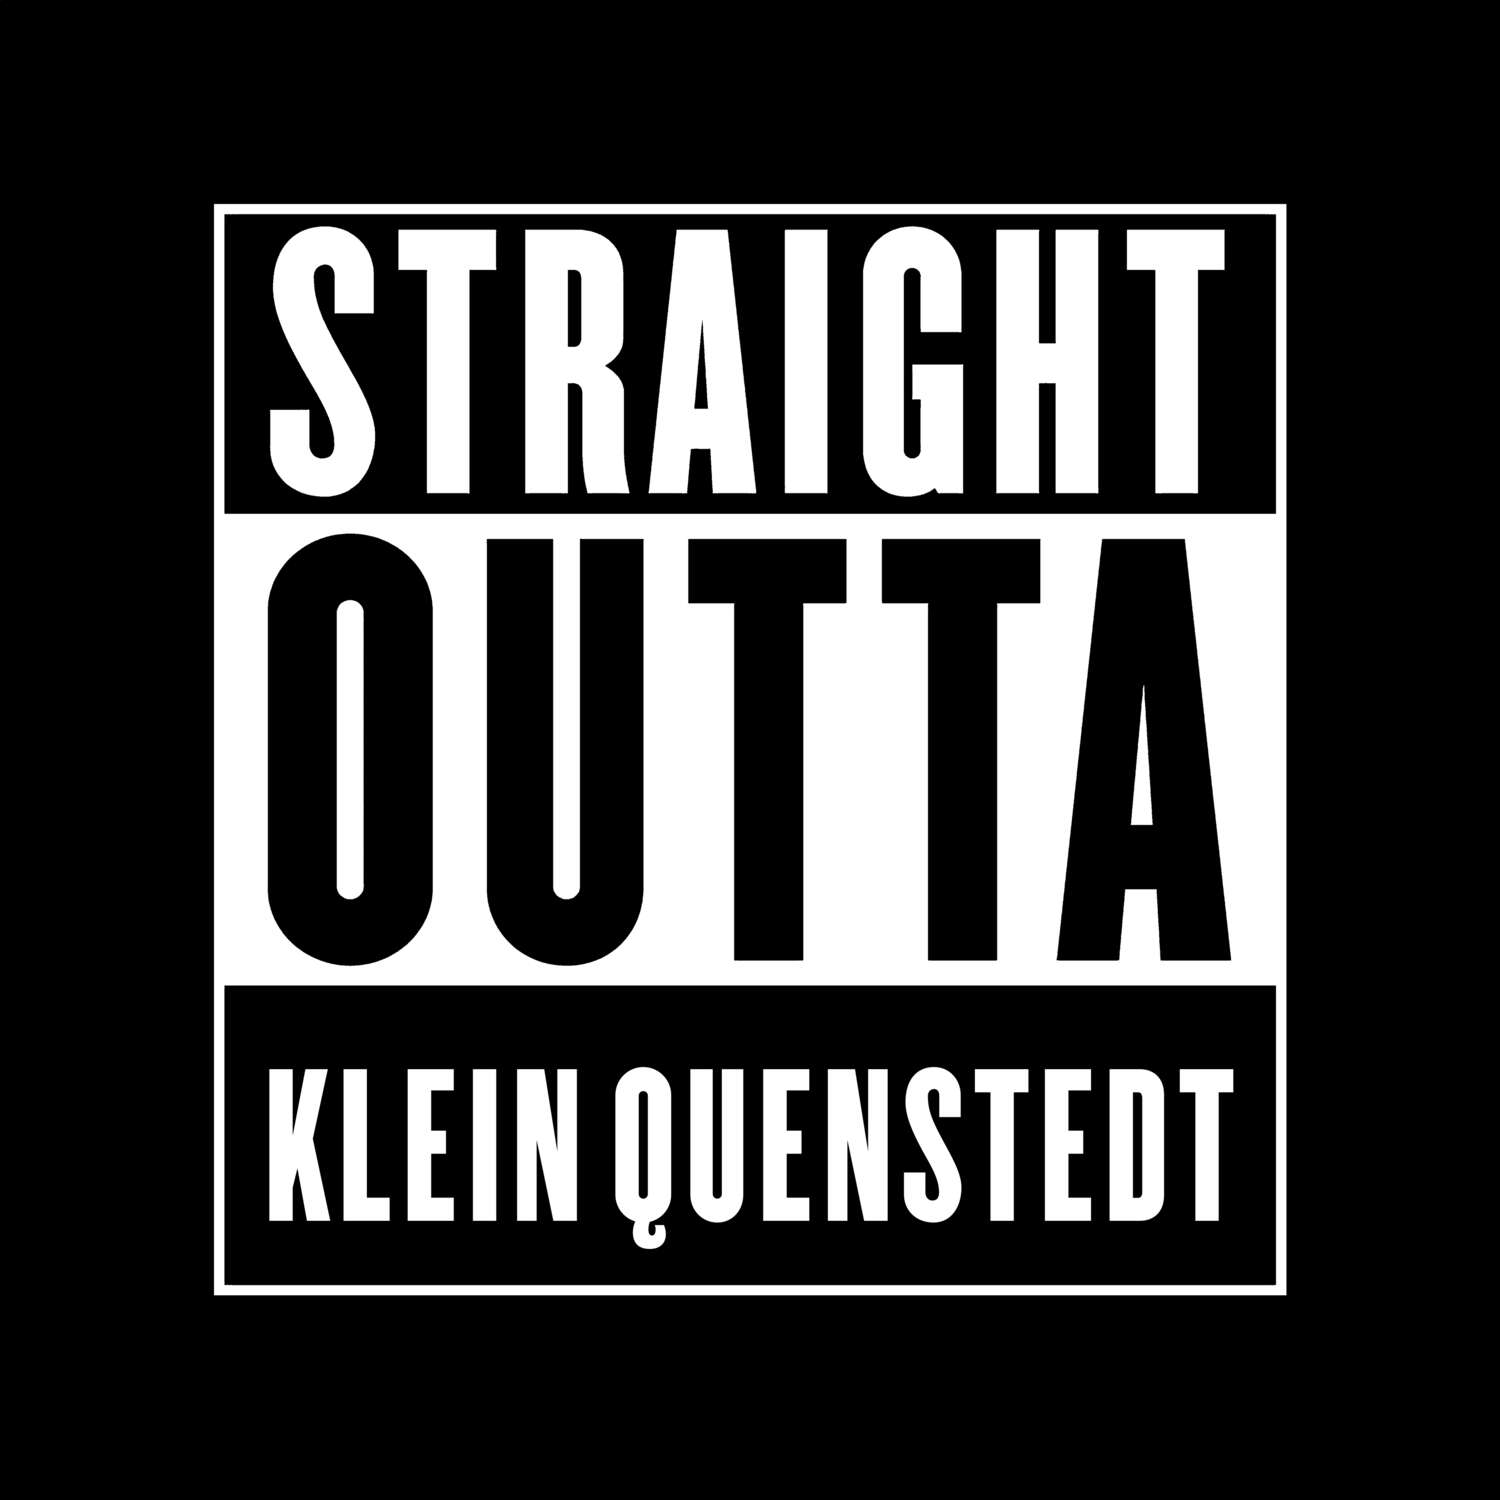 Klein Quenstedt T-Shirt »Straight Outta«